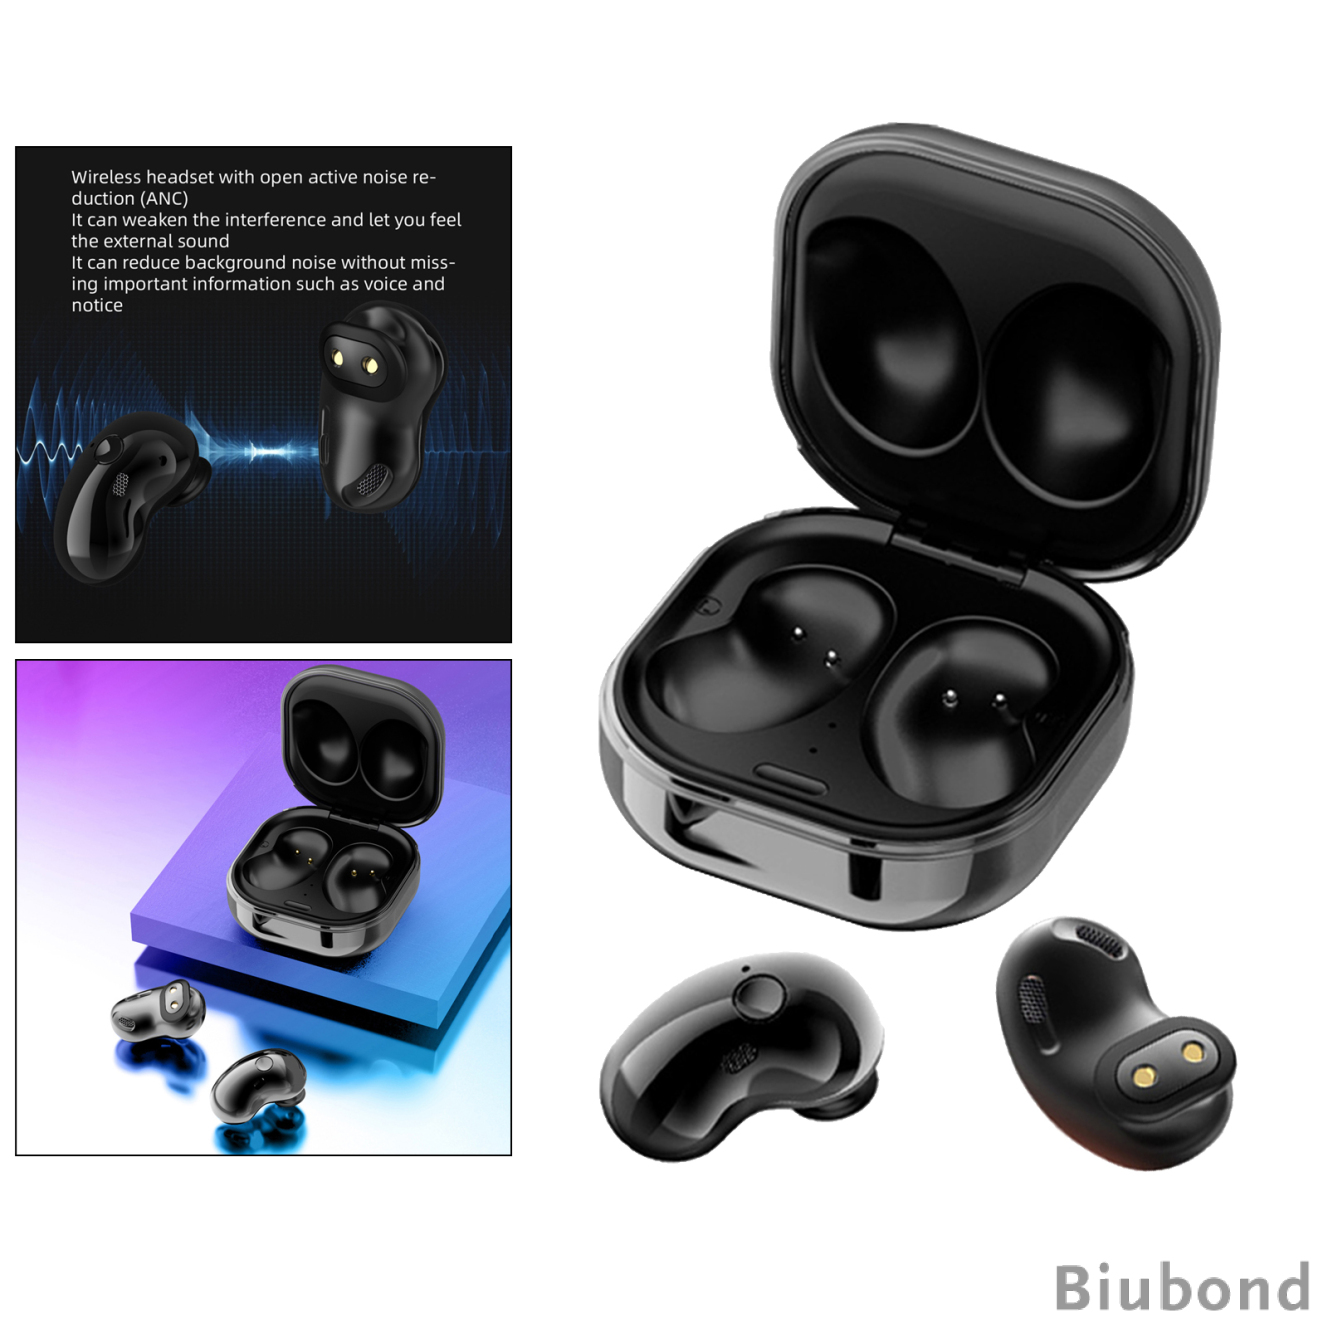 S6 TWS Bluetooth Earphones Wireless in-Ear Earbuds Headphone Earpieces, IPX4 Waterproof